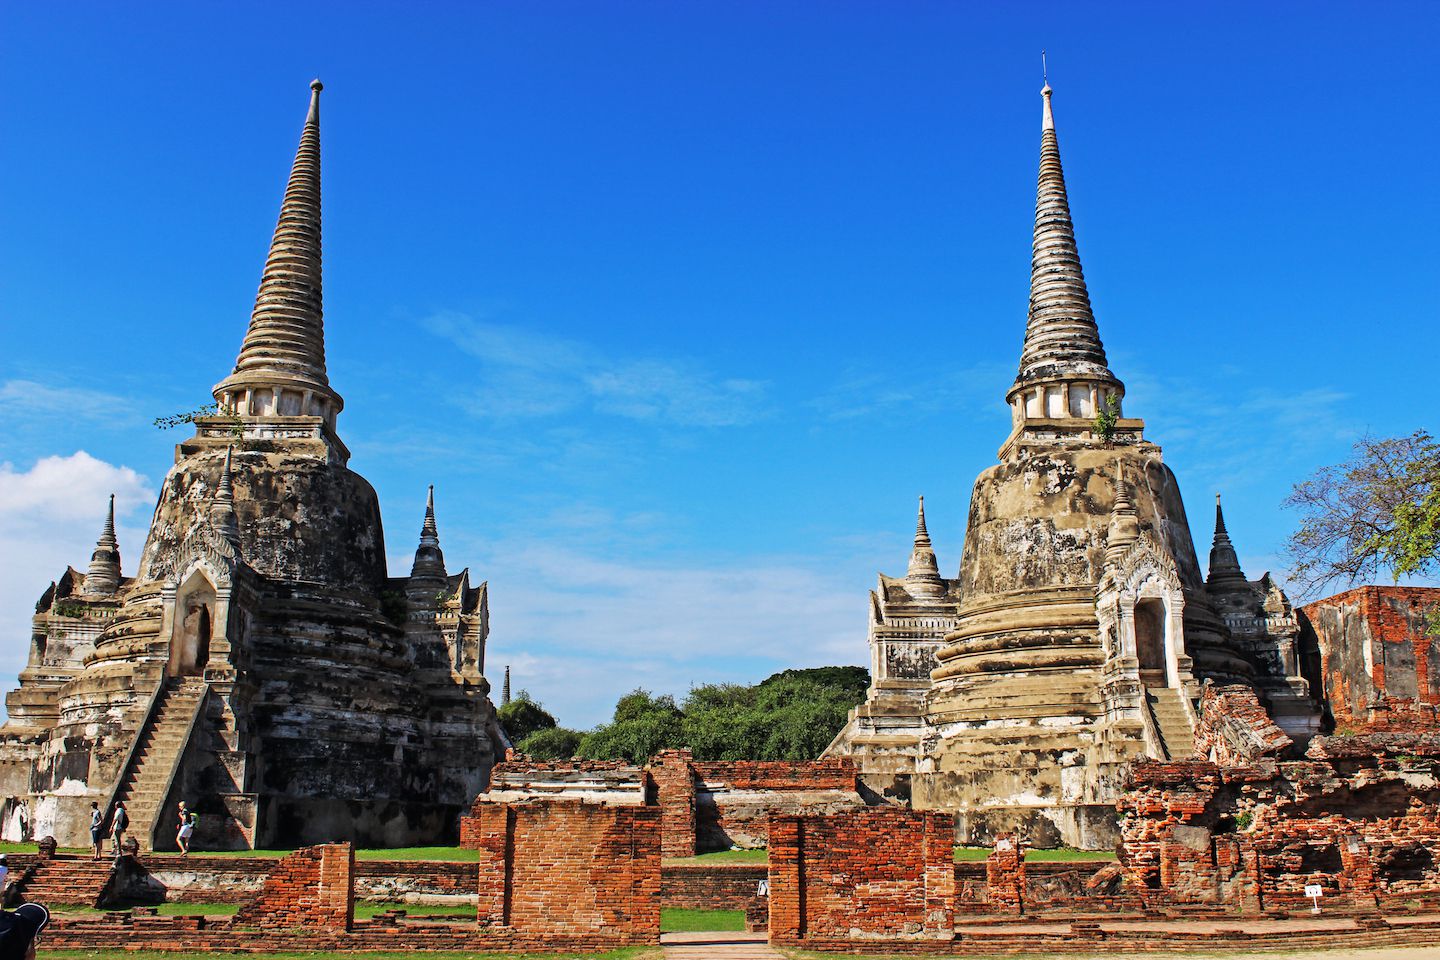 View of Wat Phra Si Sanphet, Ayutthaya